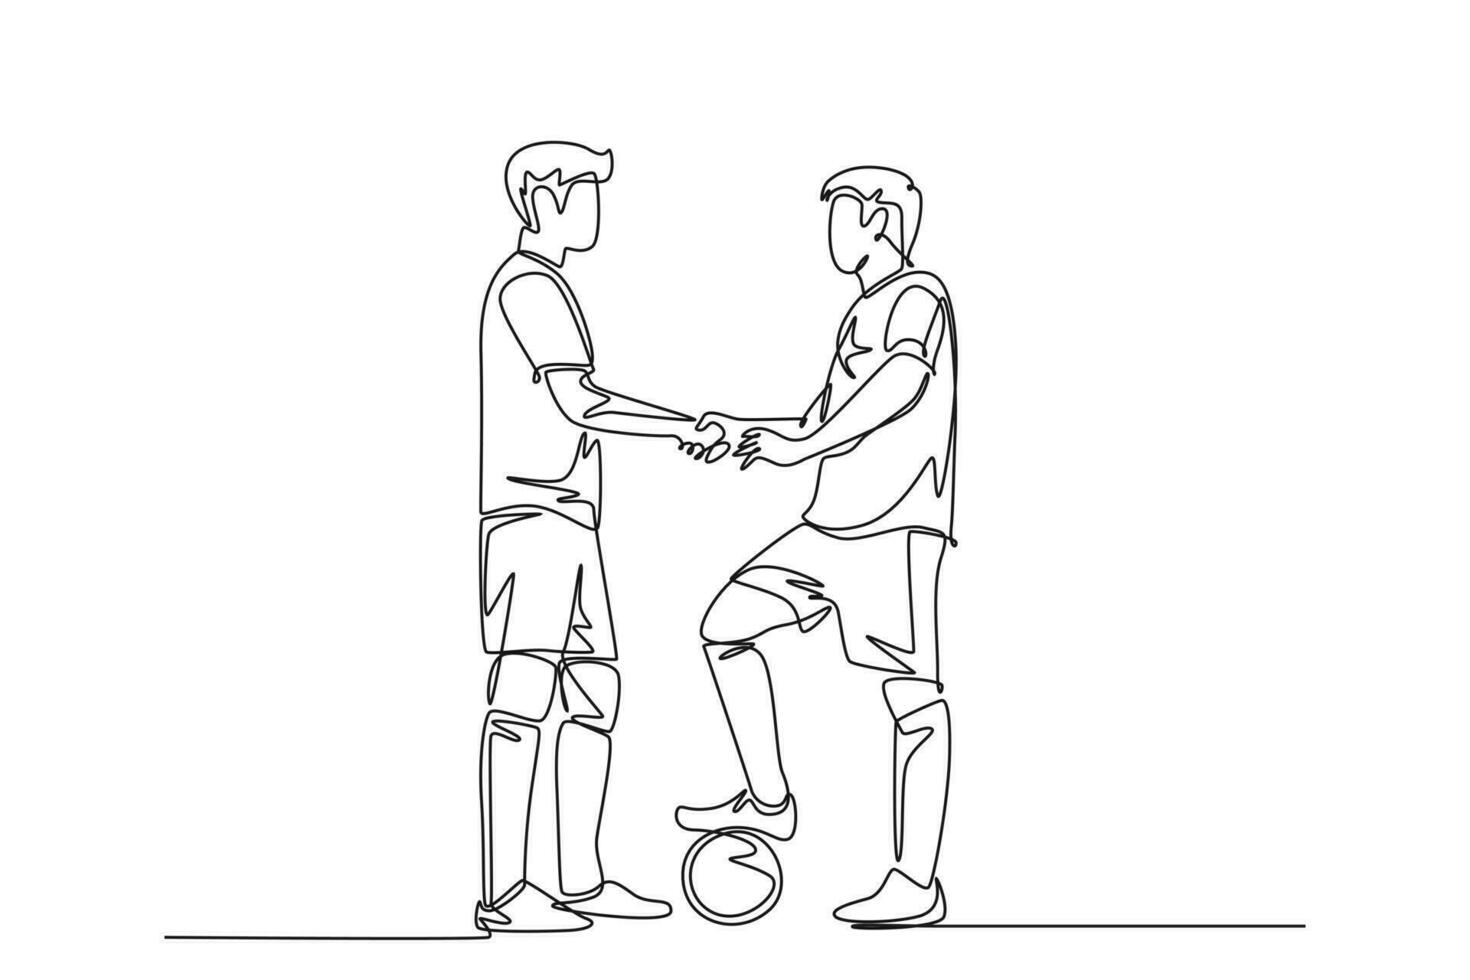 Single einer Linie Zeichnung zwei Fußball Spieler Händeschütteln zu Show Sportlichkeit Vor beginnend das passen. Respekt im Fußball Sport Konzept. modern kontinuierlich Linie zeichnen Design Grafik Vektor Illustration